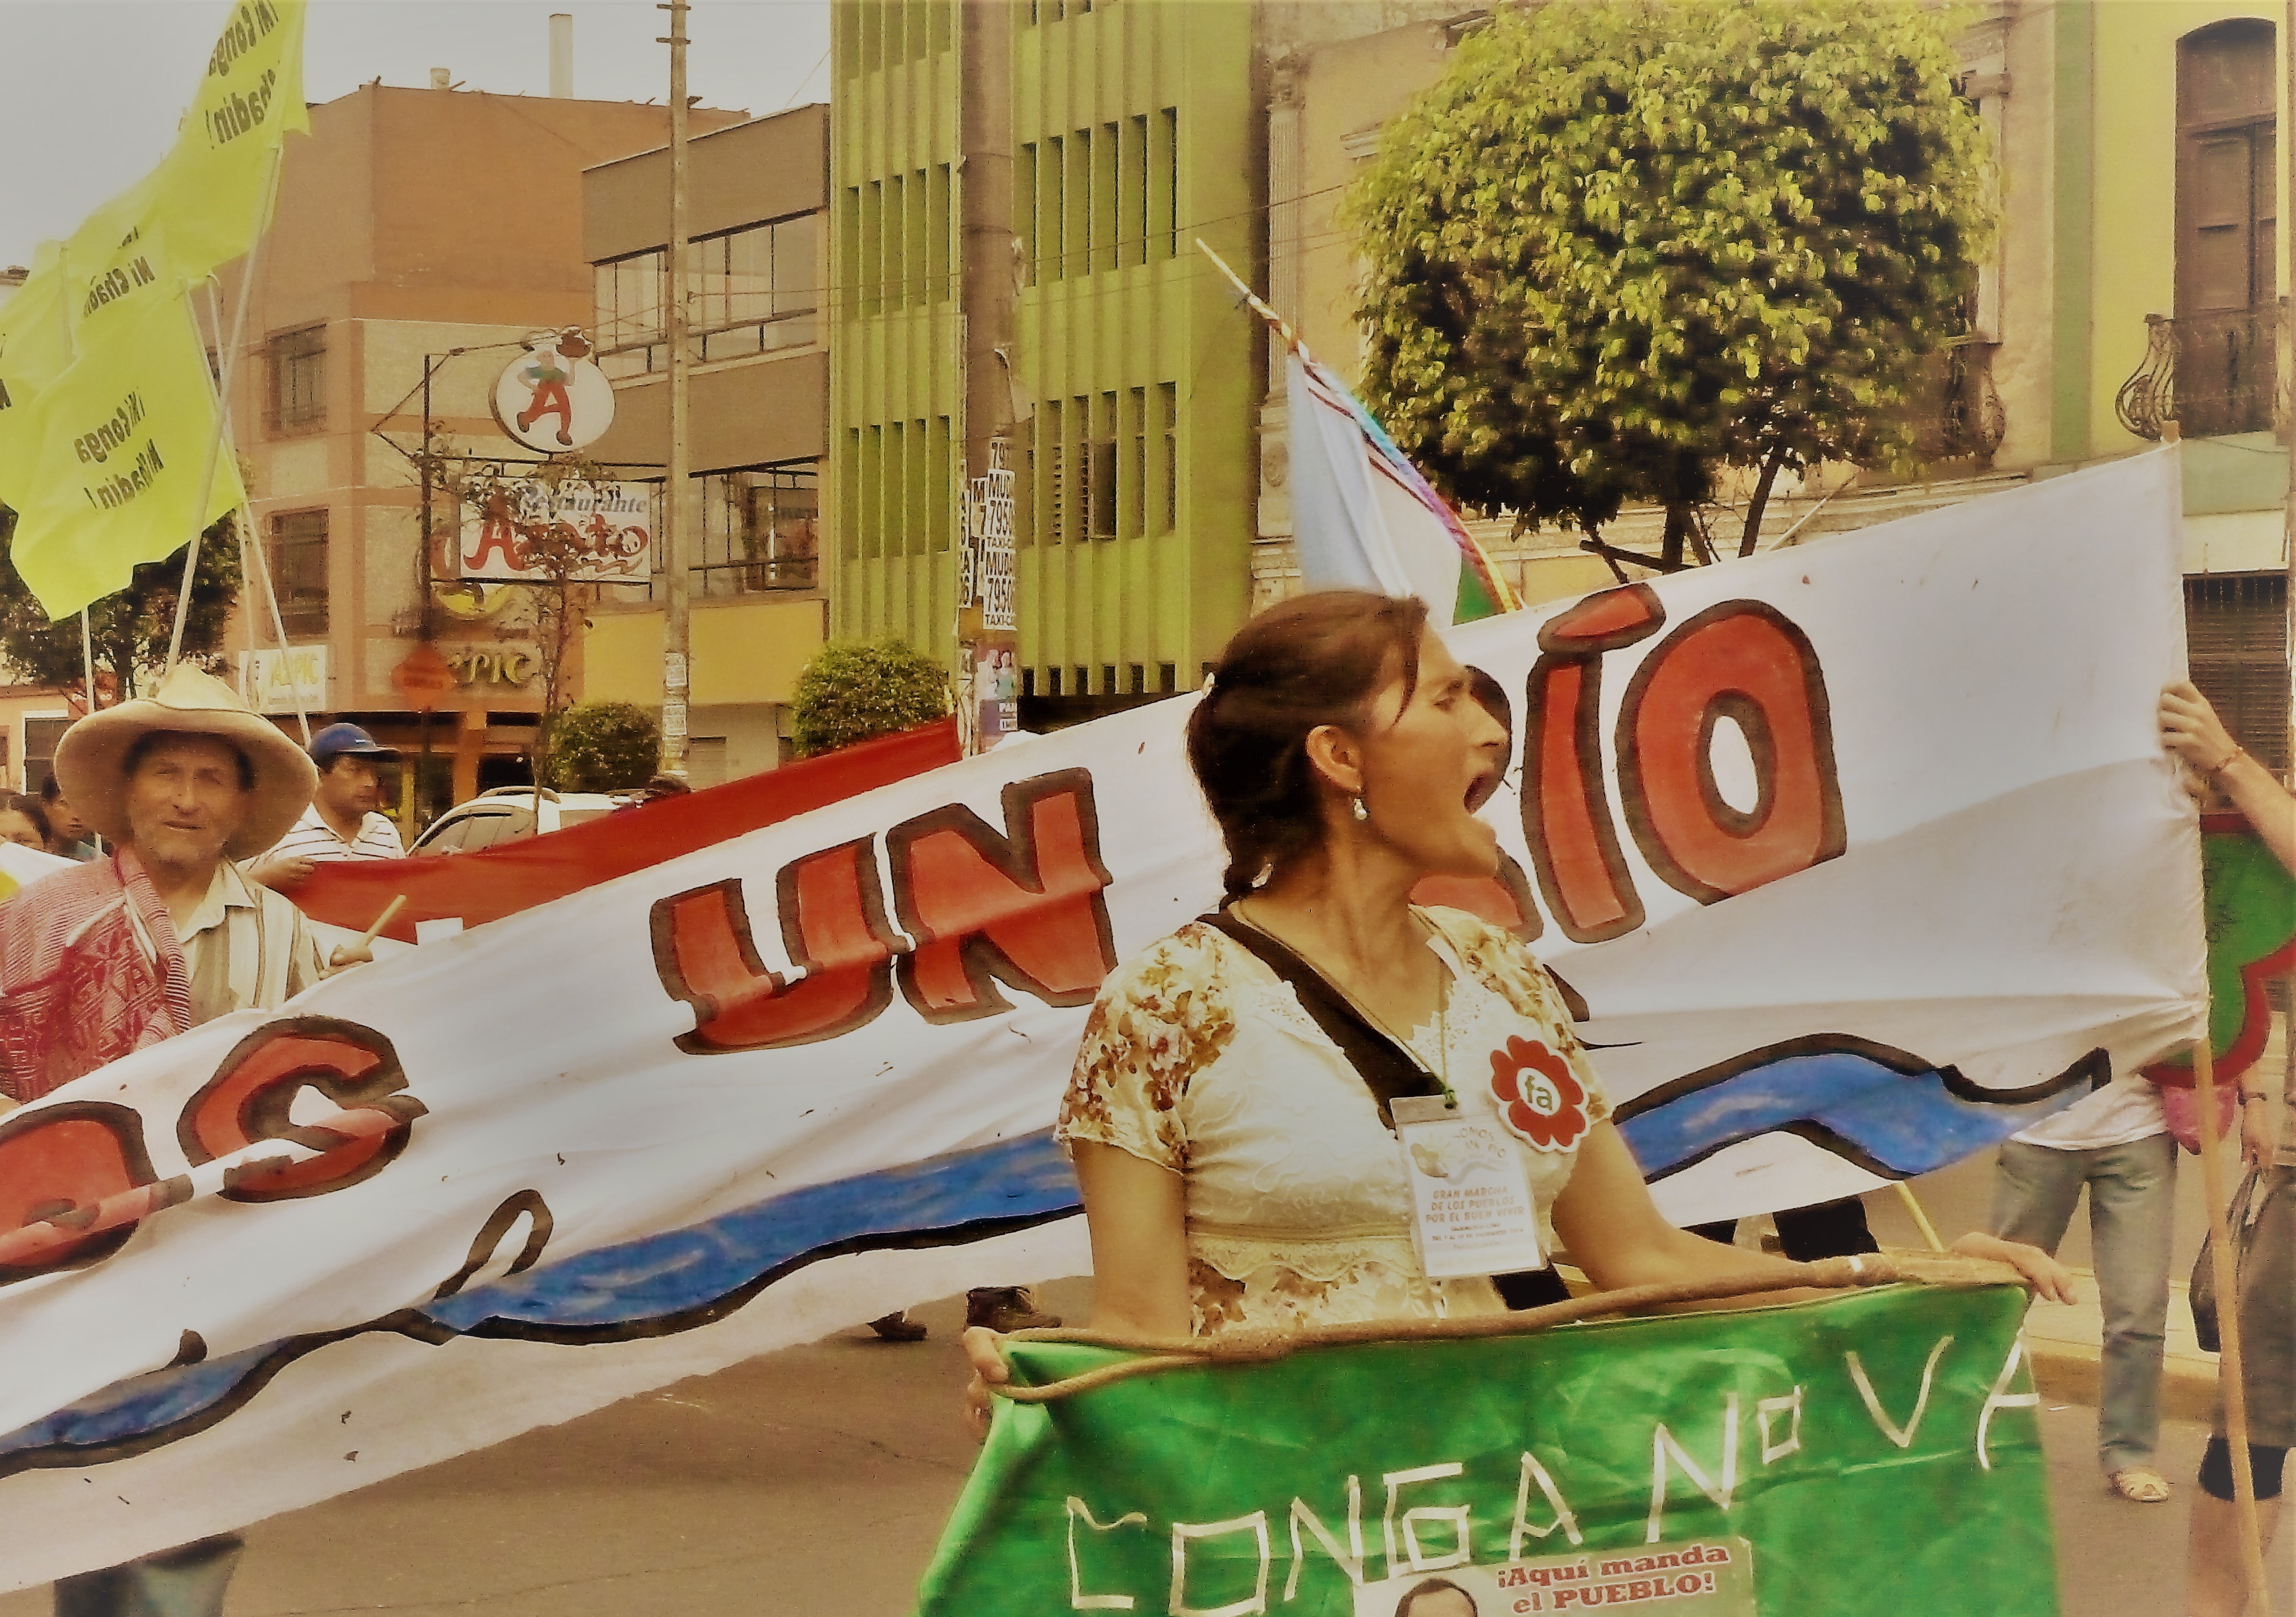 Communiqué: France Amérique Latine dénonce la persécution judiciaire des défenseurs environnementaux au Pérou